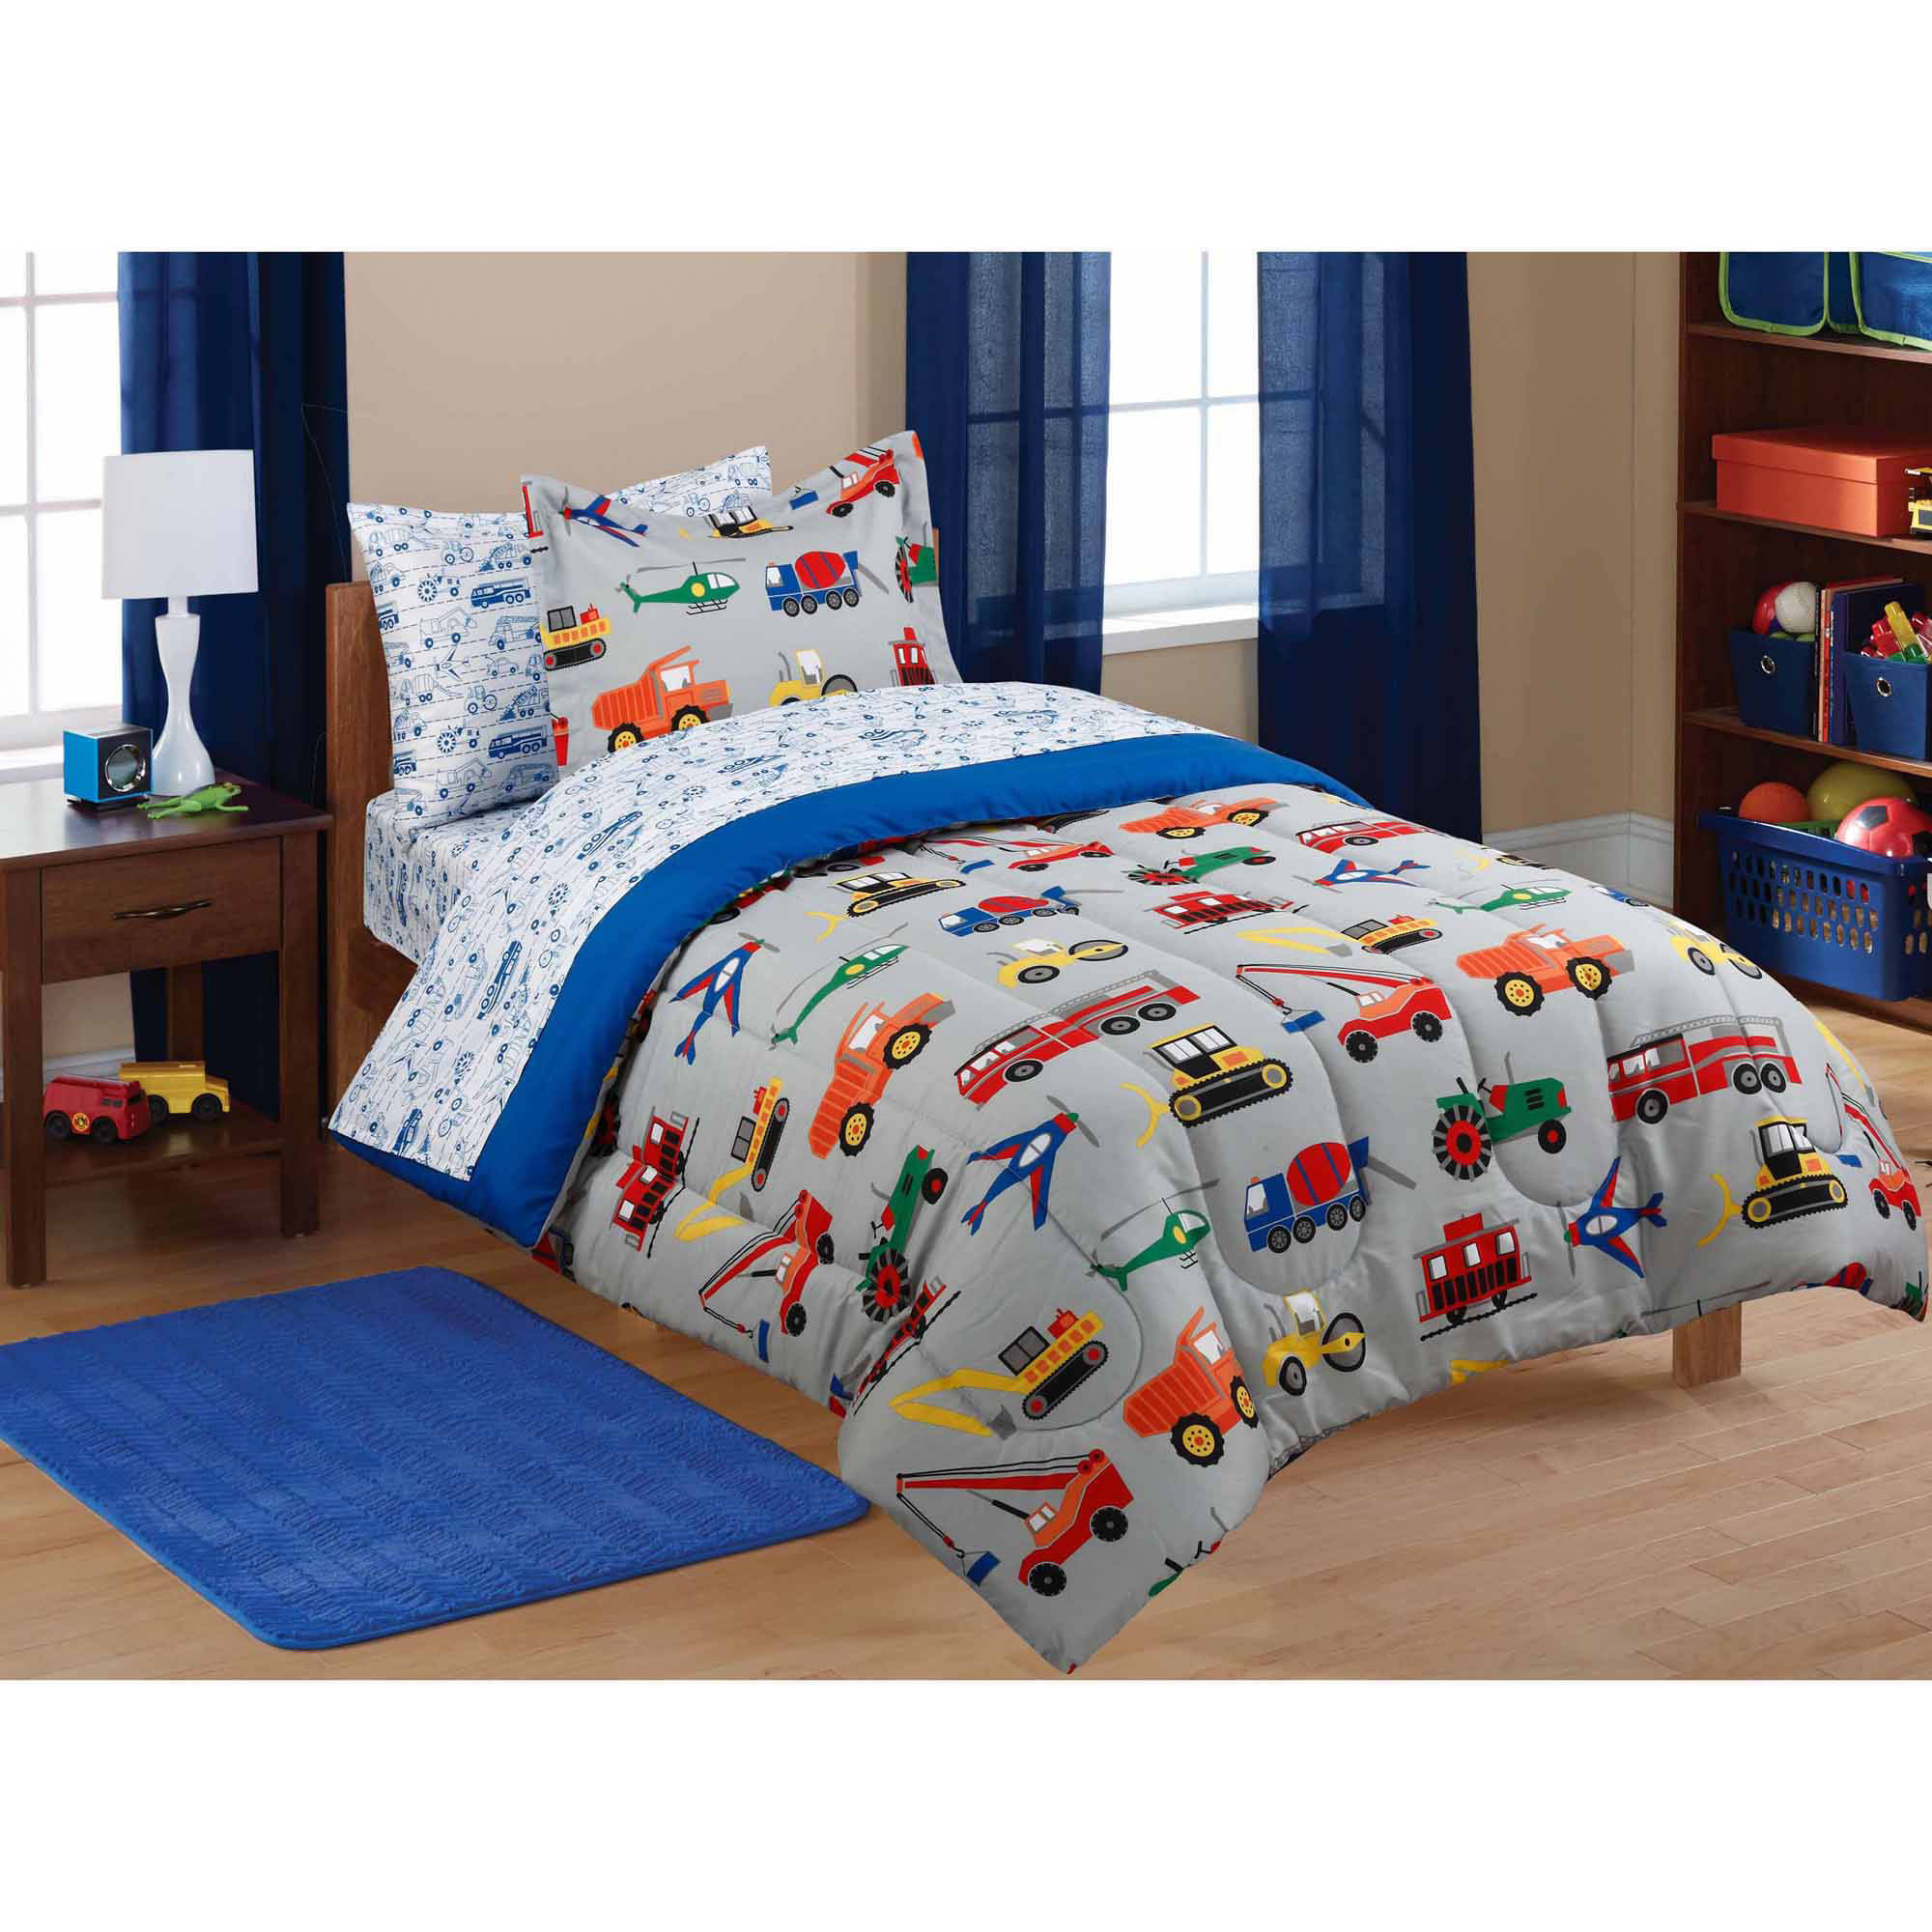 Kids Bedroom Sets Walmart
 Mainstays Kids Transportation Bed in a Bag Coordinating